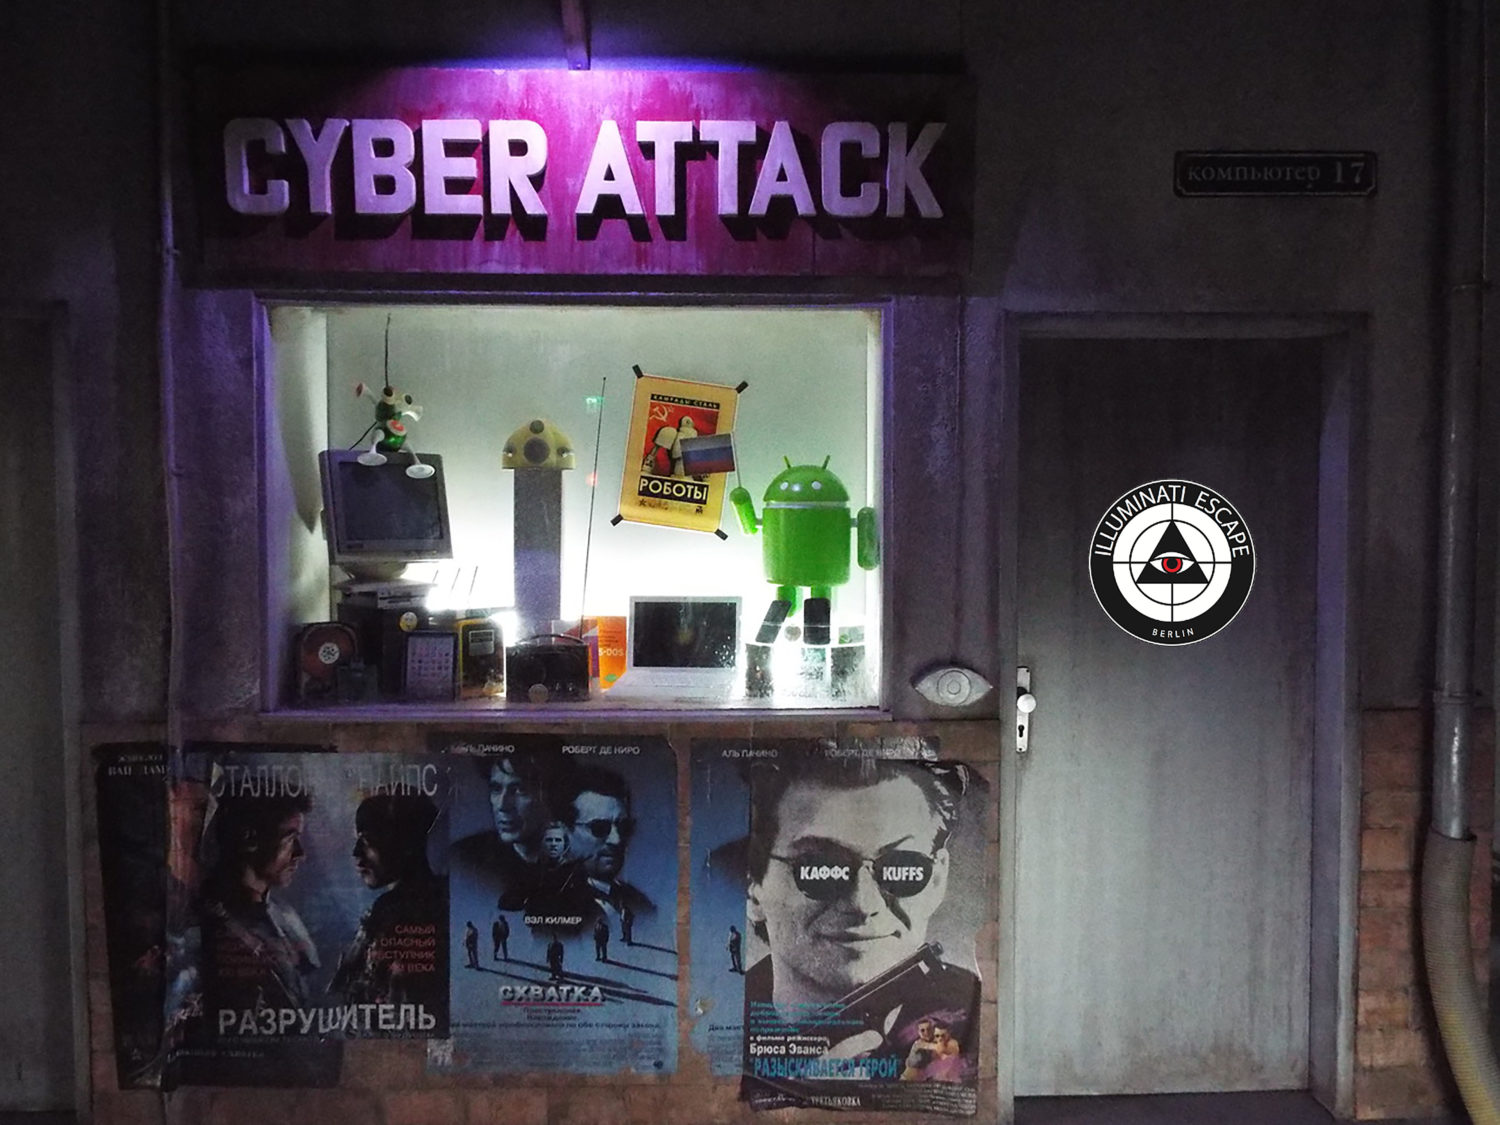 So sieht es im Escape Room "Cyber Attack" bei Illuminati Escape aus. Escape Rooms und Escape Games in Berlin